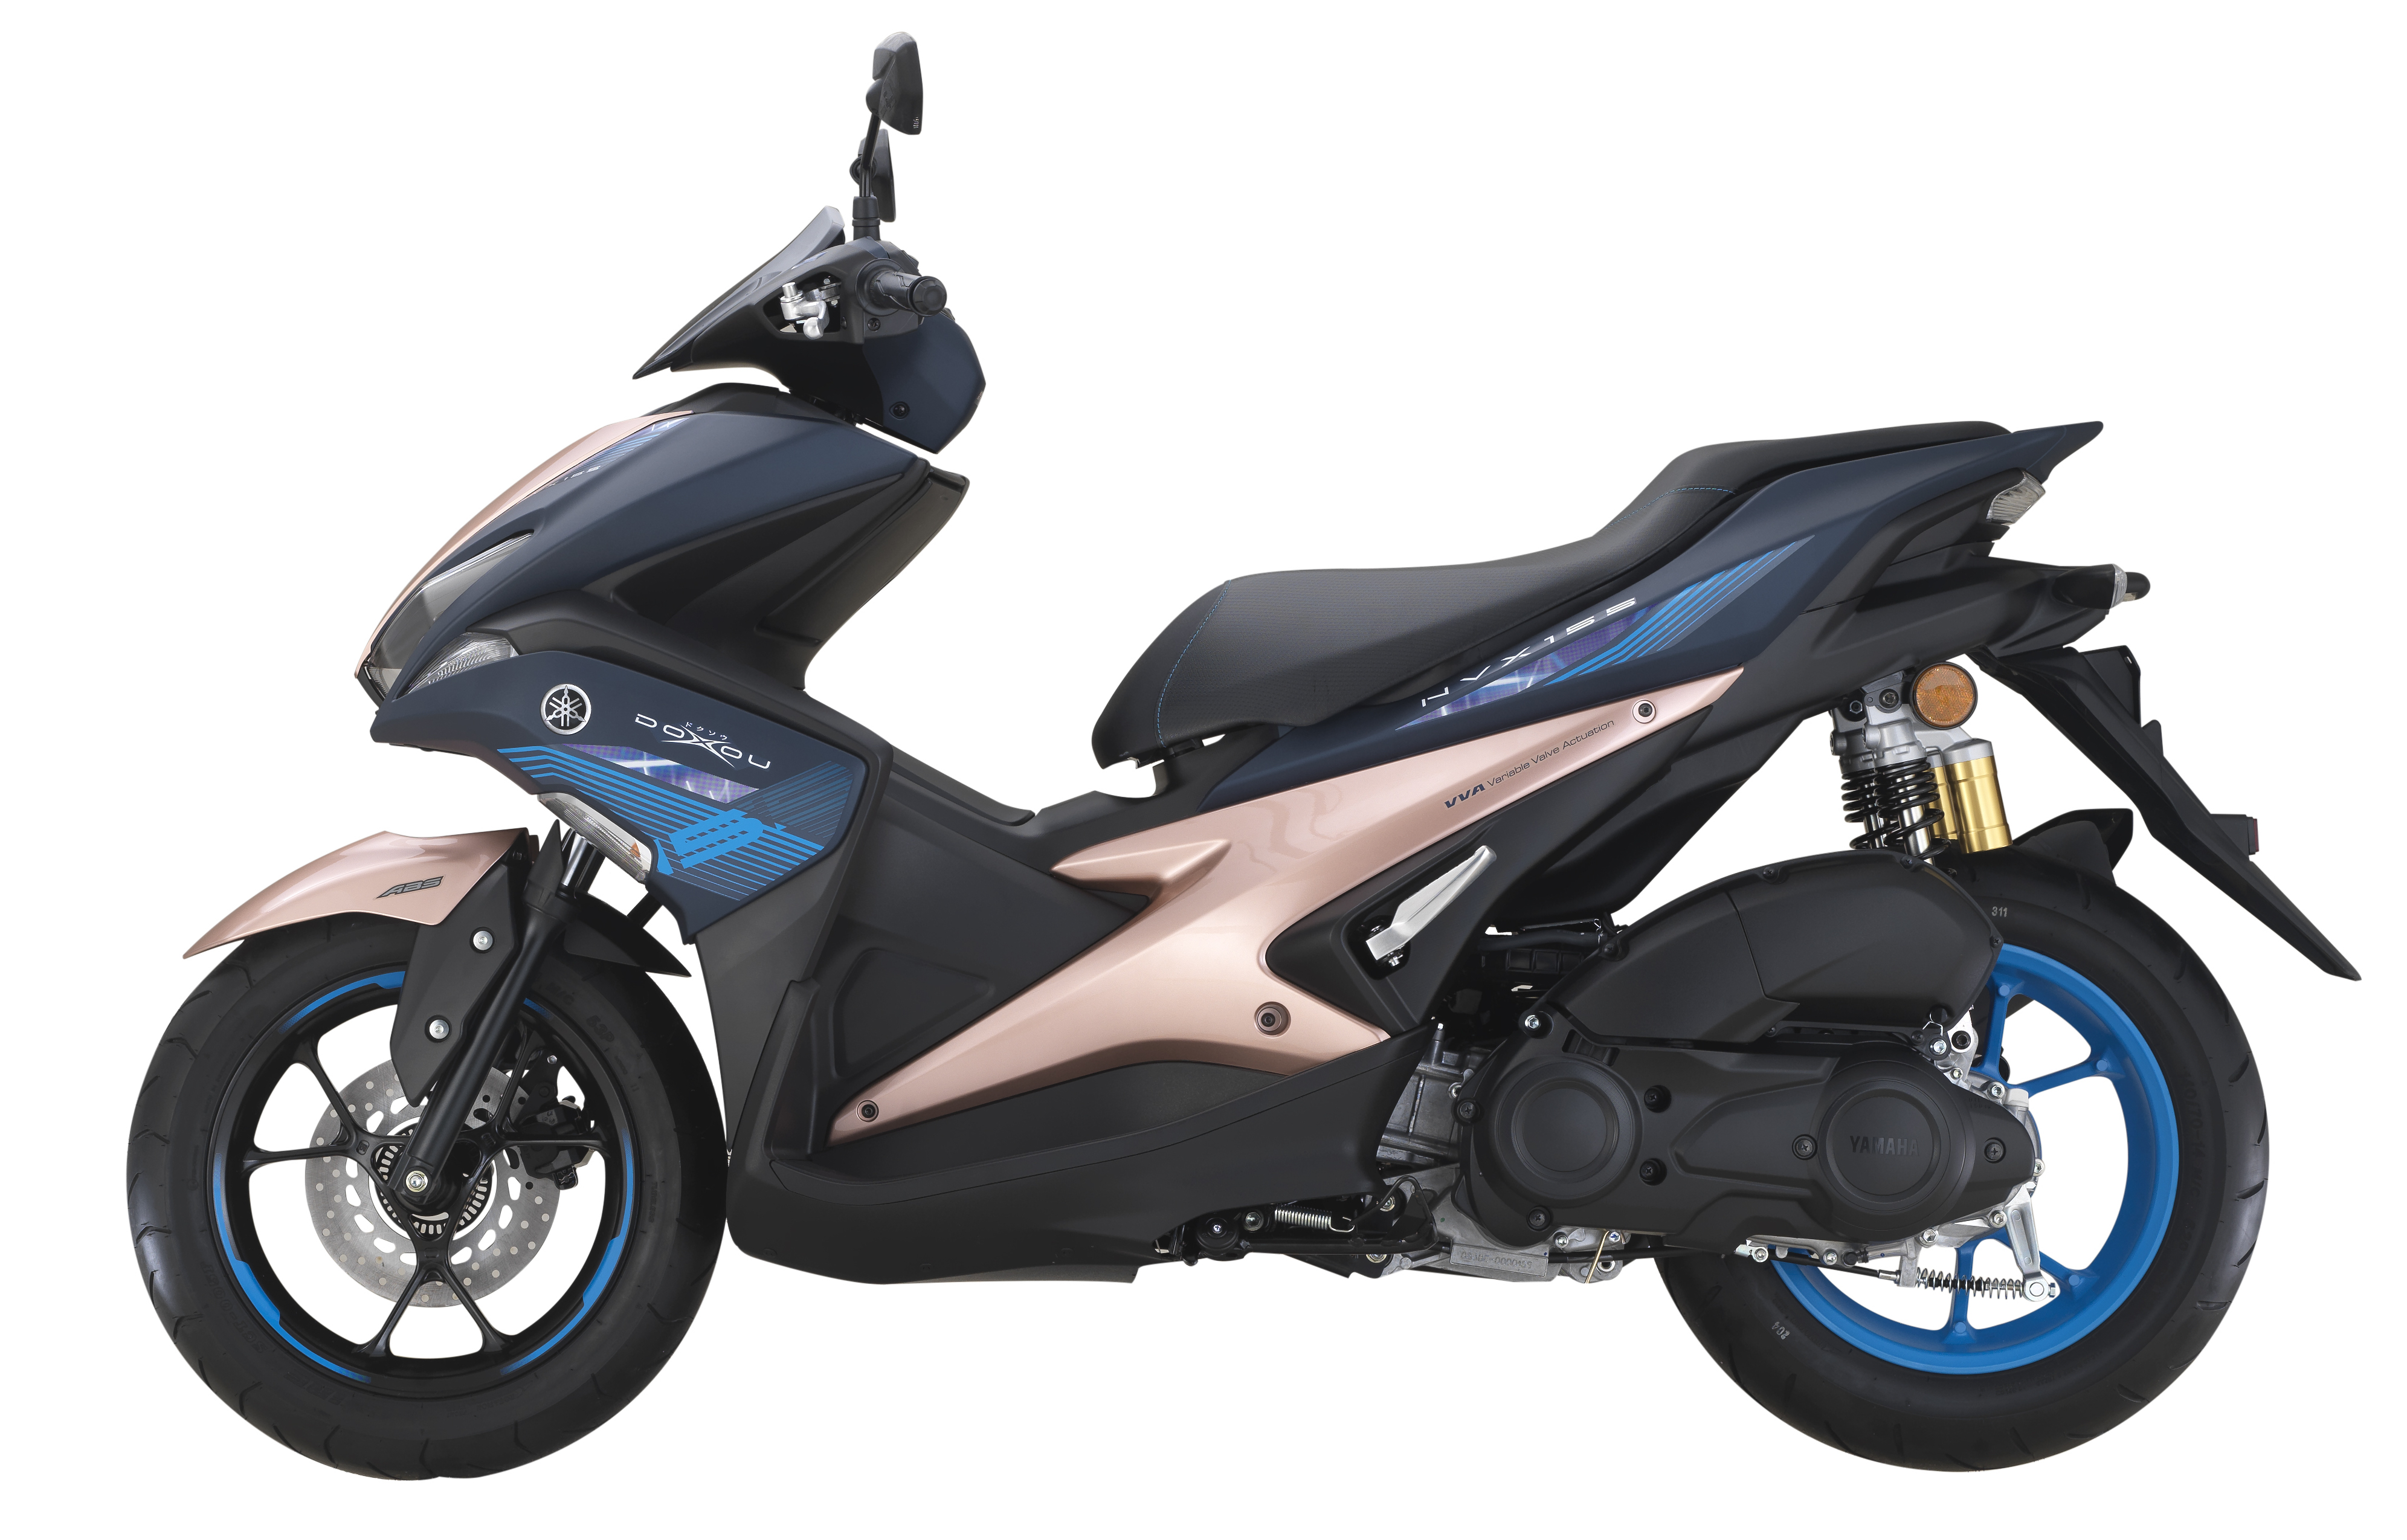 2019 Yamaha NVX 155 Doxou Malaysia price, RM10,688 2019 Yamaha NVX 155 ...